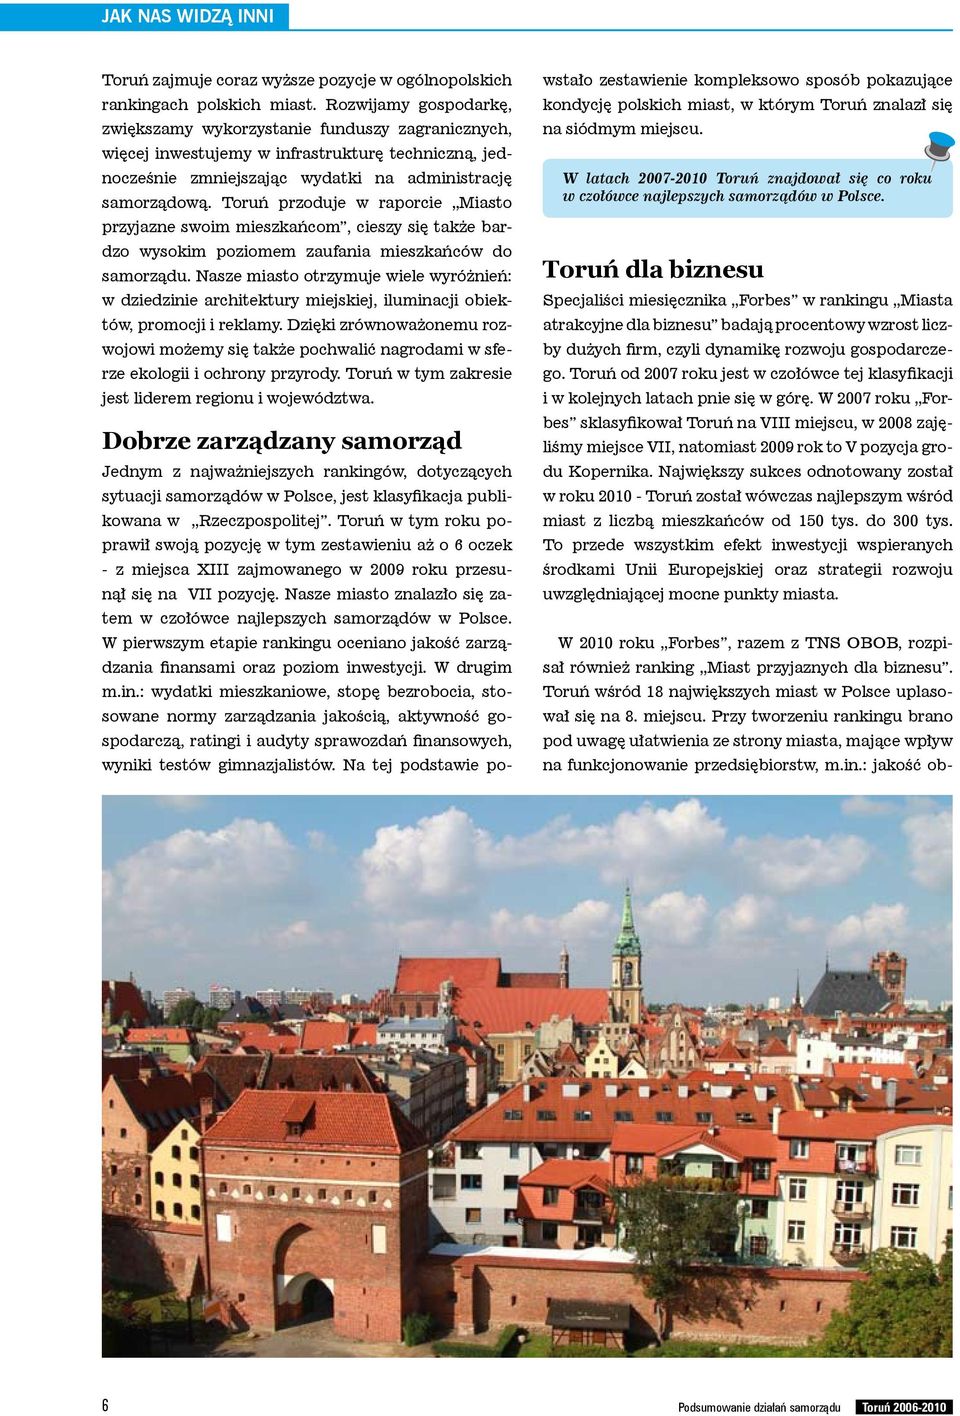 Toruń przoduje w raporcie Miasto przyjazne swoim mieszkańcom, cieszy się także bardzo wysokim poziomem zaufania mieszkańców do samorządu.